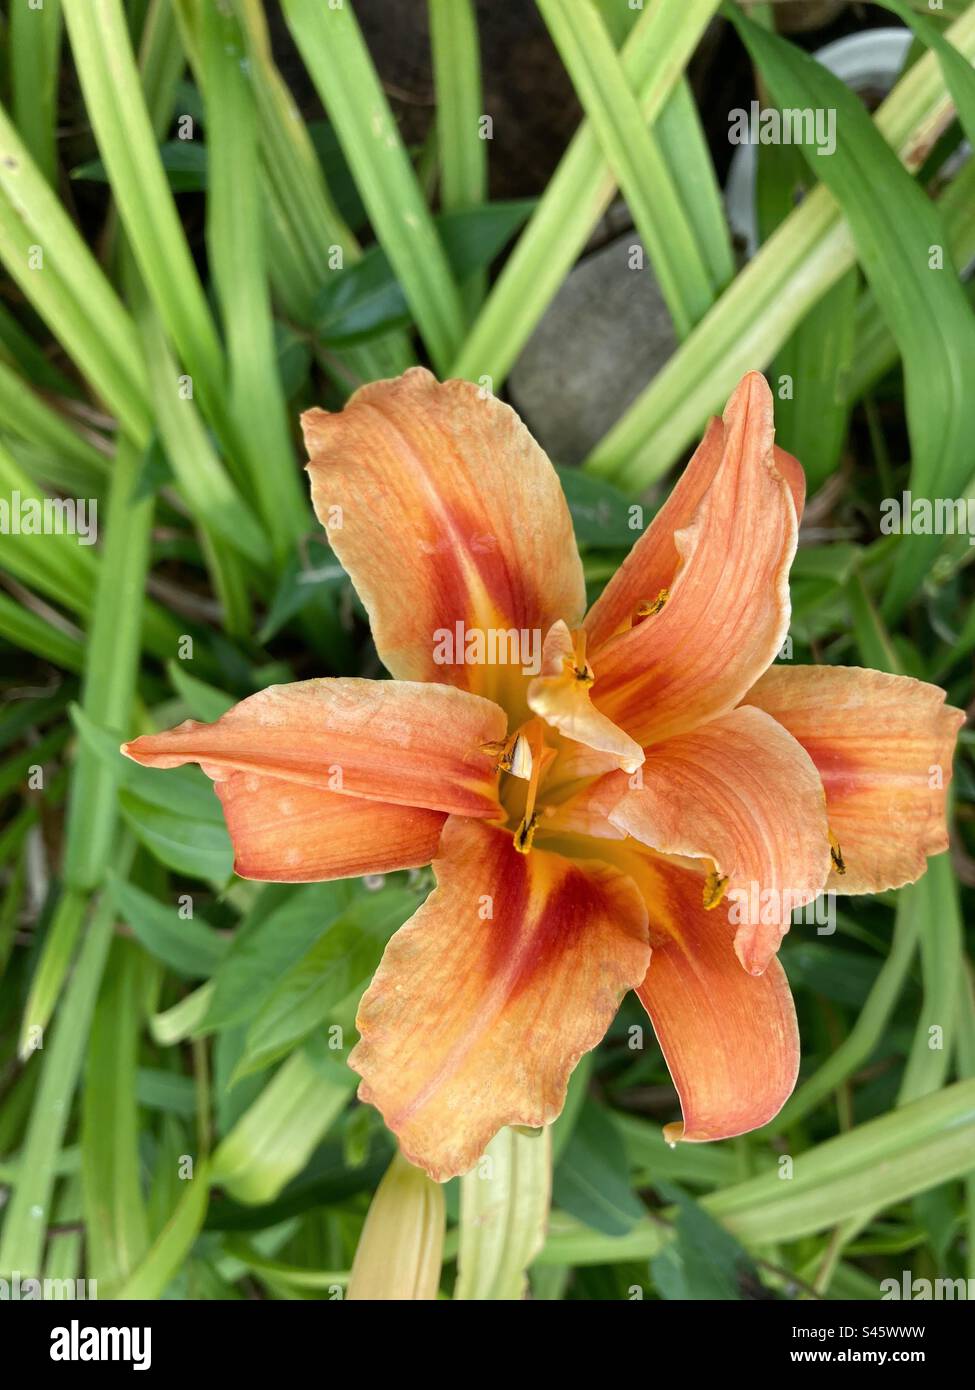 Fleur de Lilium de couleur orange dans le jardin isolé, avec végétation verte autour Banque D'Images